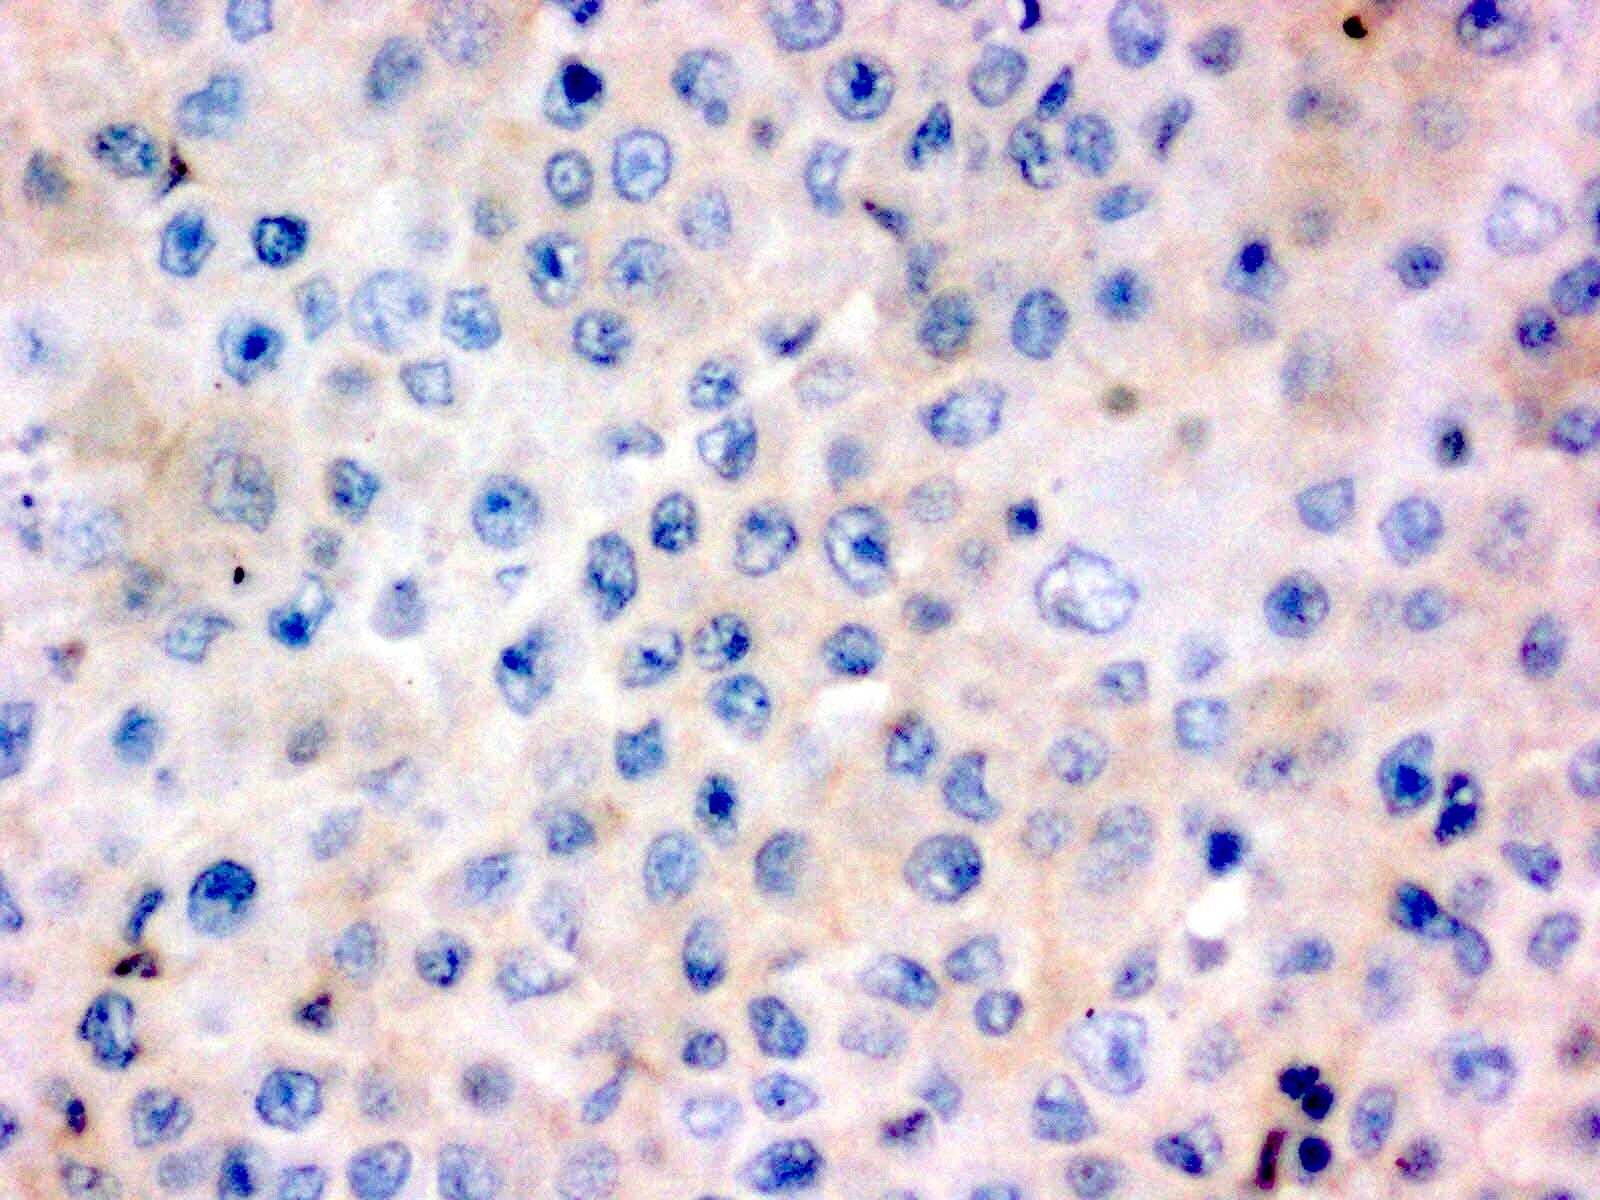 CD30 negativity in tumor cells